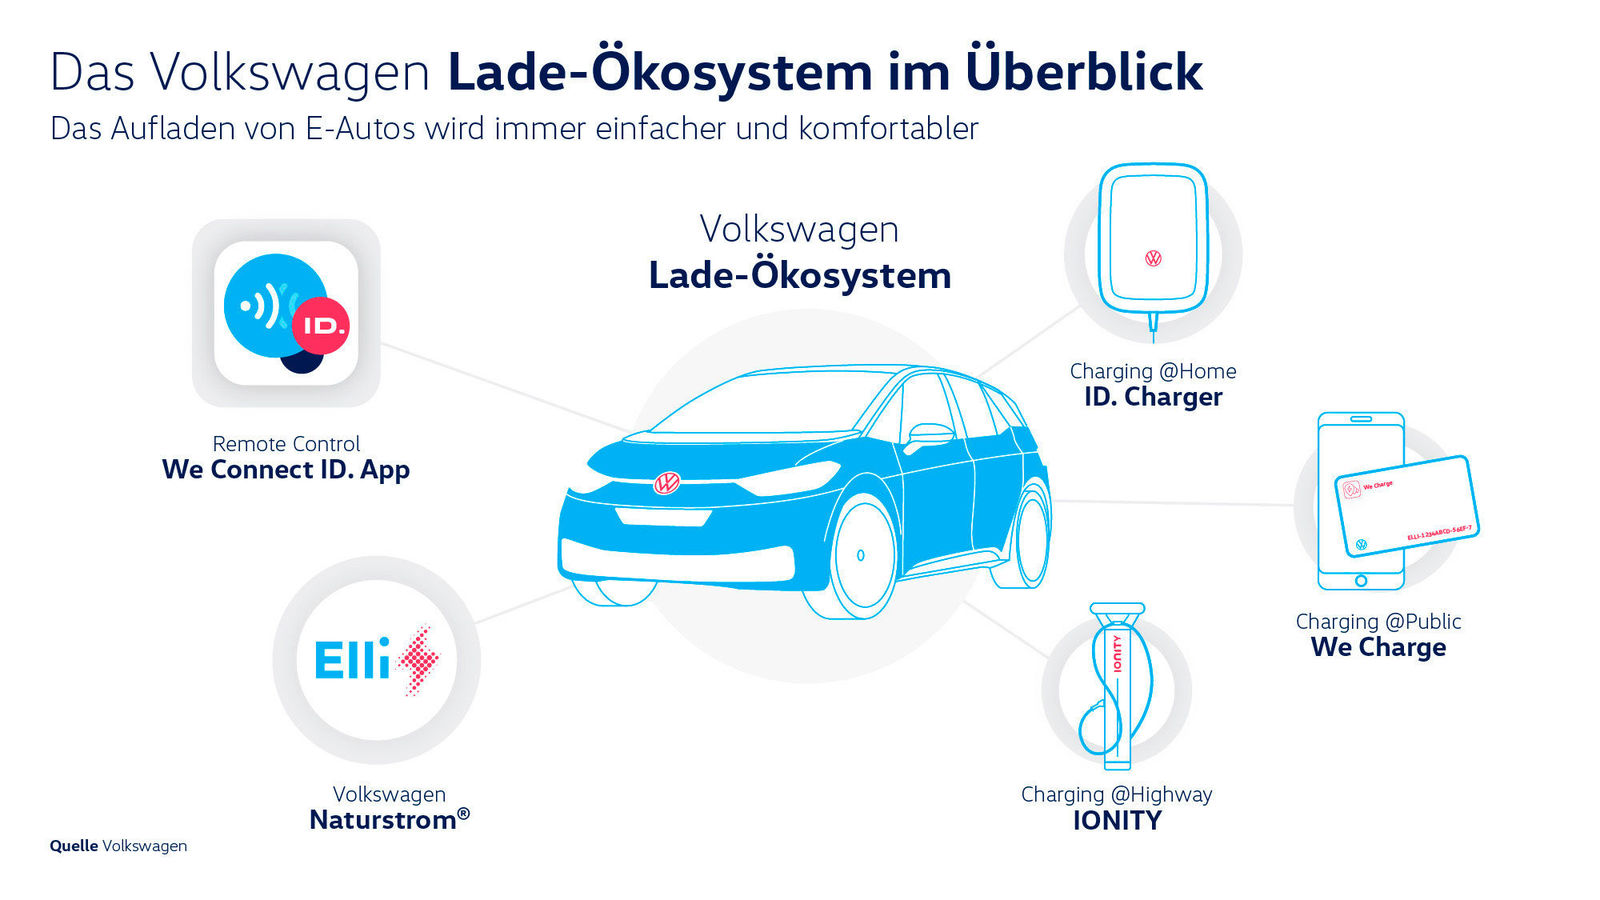 B. Das Lade-Ökosystem von Volkswagen